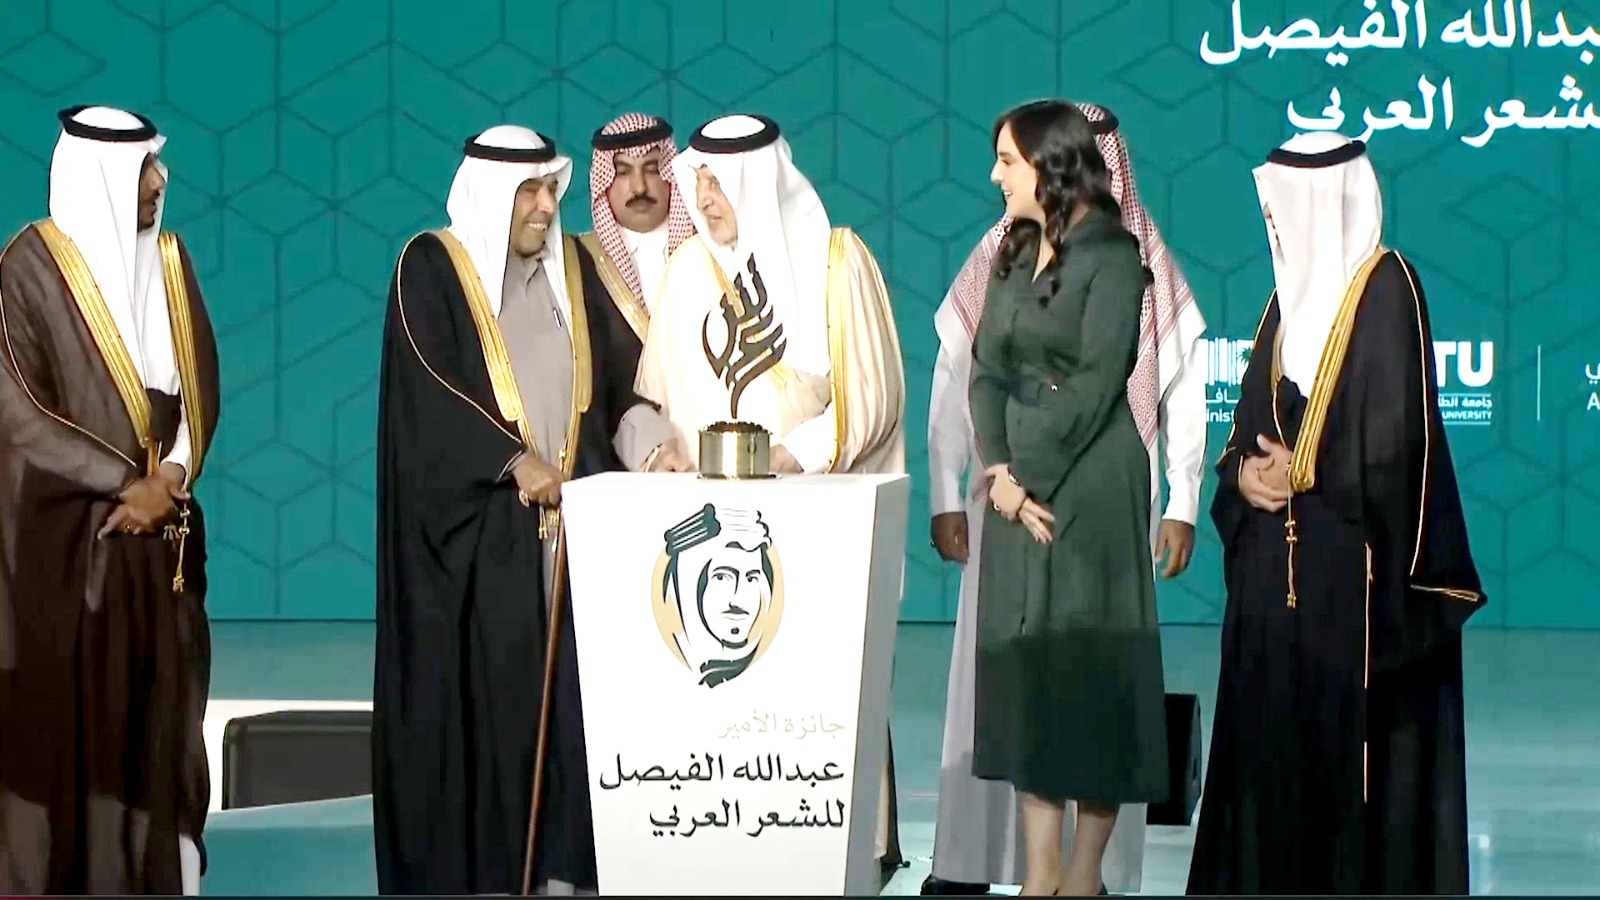 جائزة الامير عبدالله الفيصل للشعر العربي توَّجت الشاعر عبدالعزيز سعود البابطين